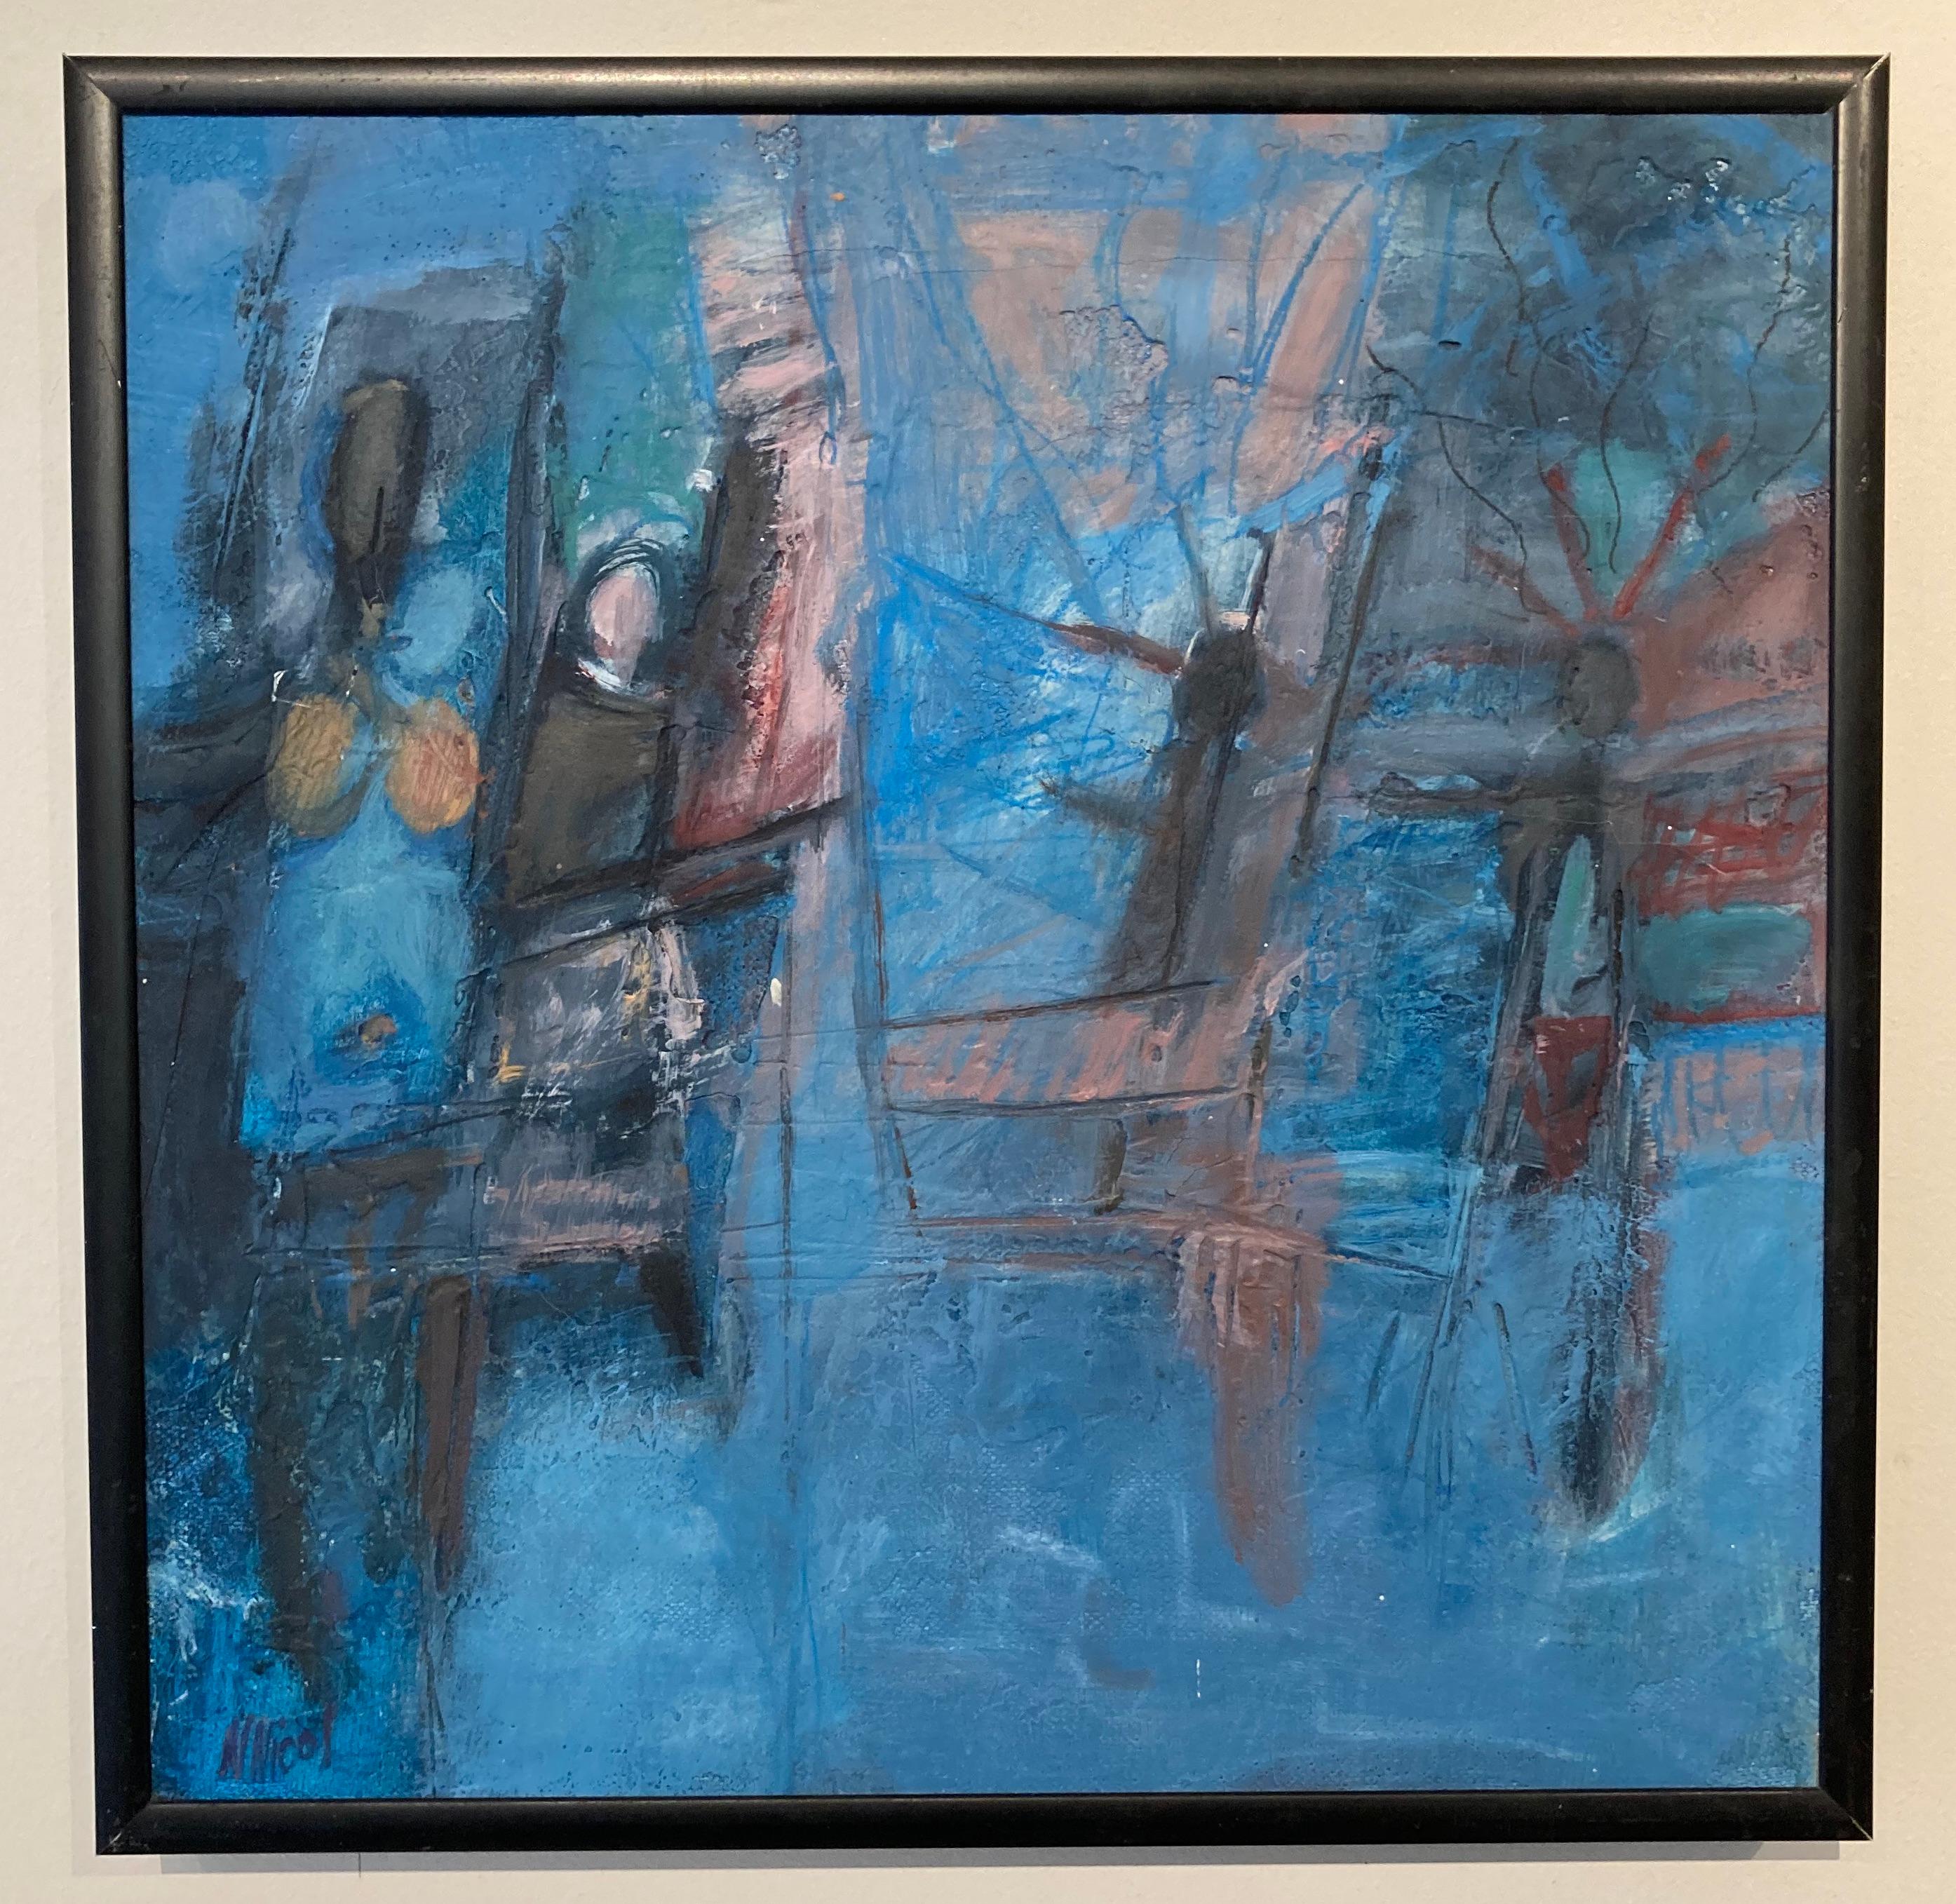 Cette huile sur toile encadrée de 14" x 14" sans titre de l'artiste Nancy Nicol présente des lignes et des formes dynamiques dans des tons vibrants de bleu, de noir et de mauve. L'utilisation de l'abstraction par l'artiste possède de manière unique